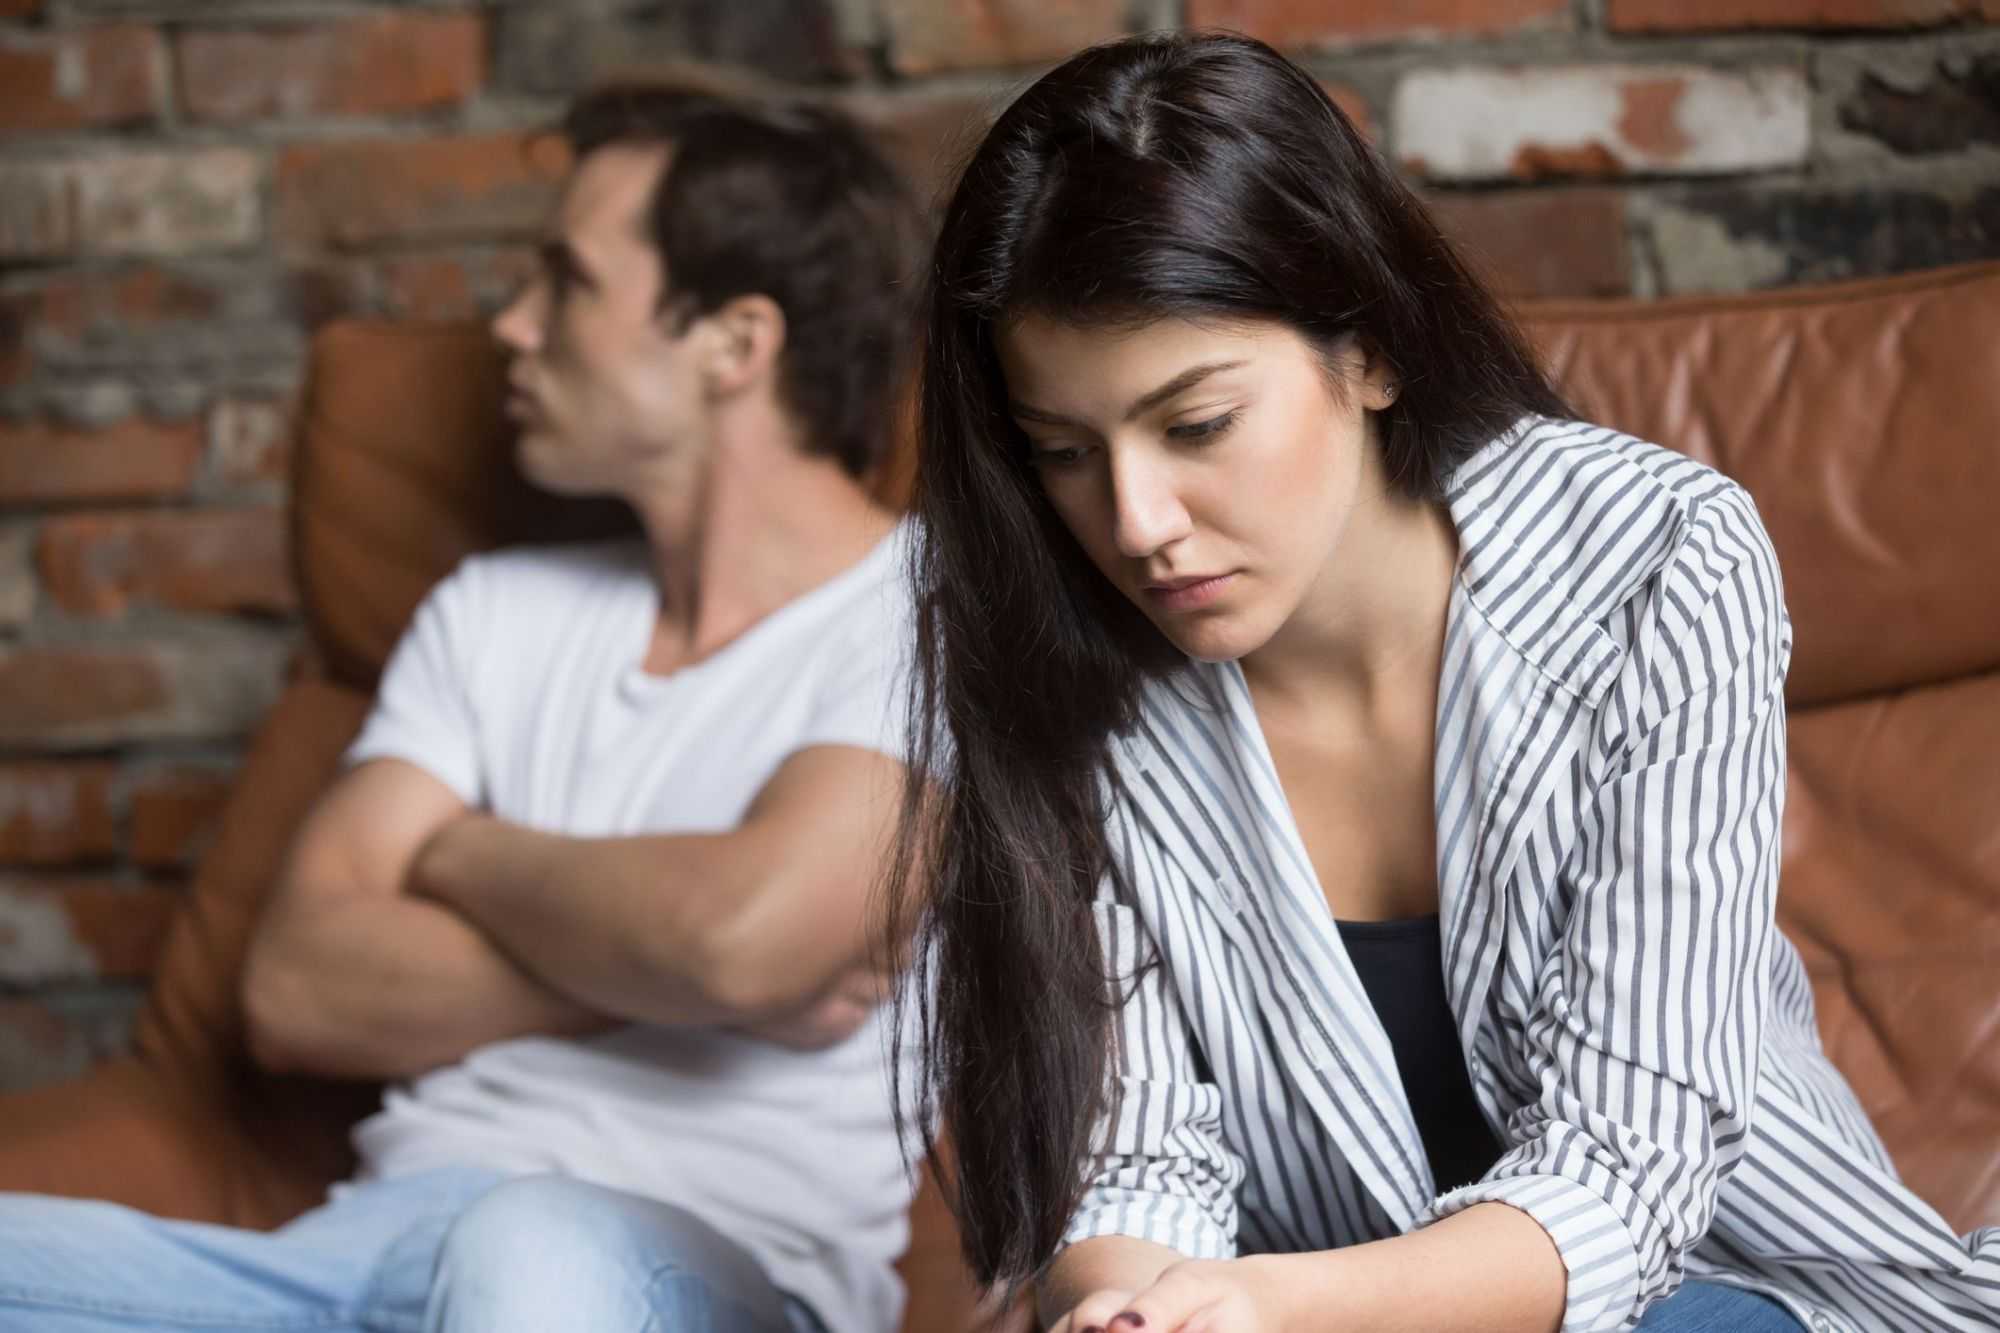 Психология мужчины в отношениях с женщиной — 5 шагов к победе